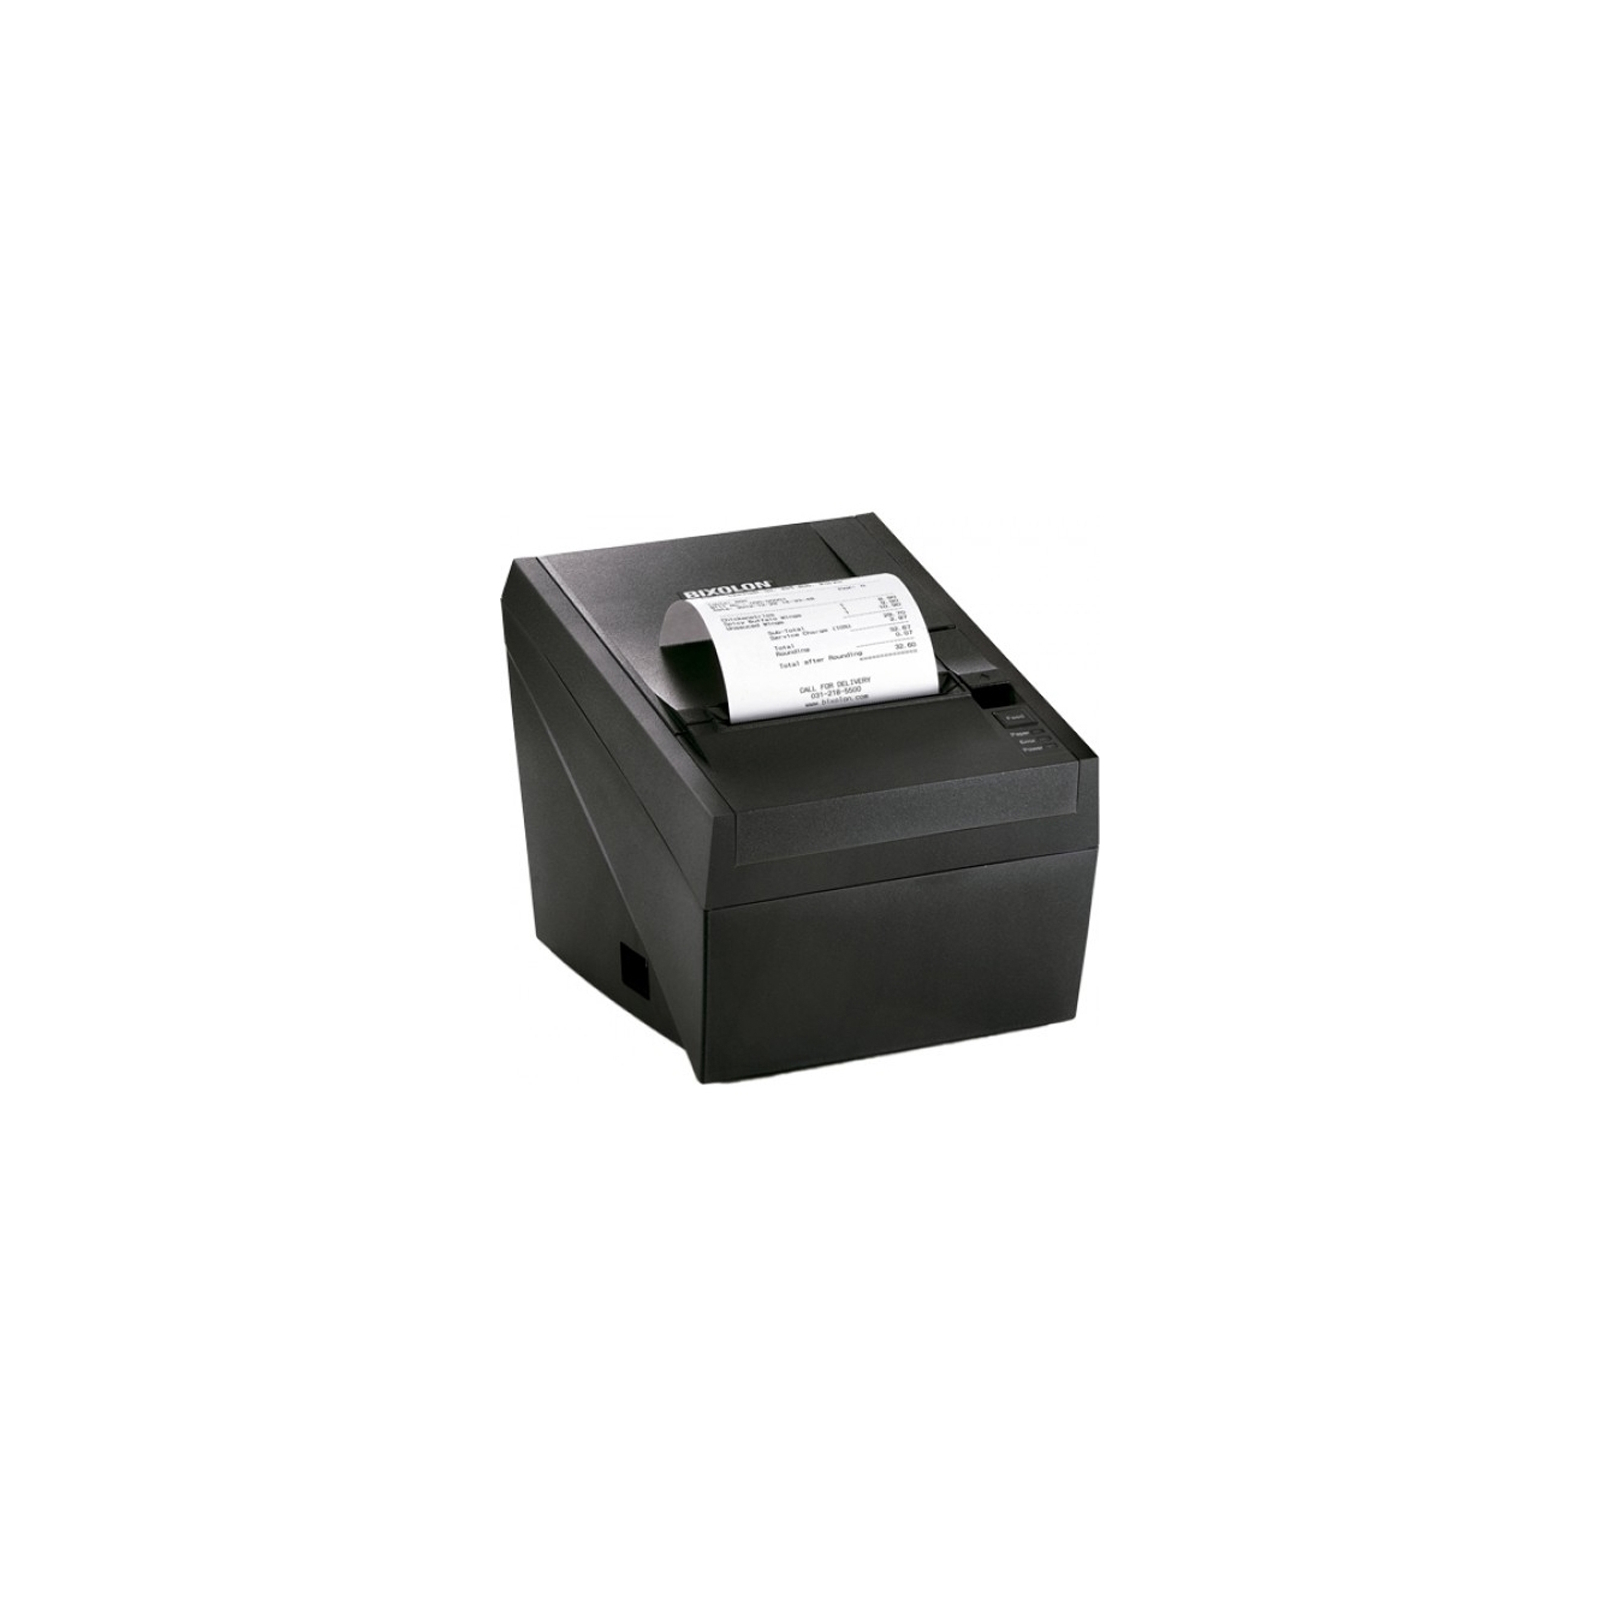 Принтер чеков Bixolon SRP-330II USB, Serial, Ethernet (11601)